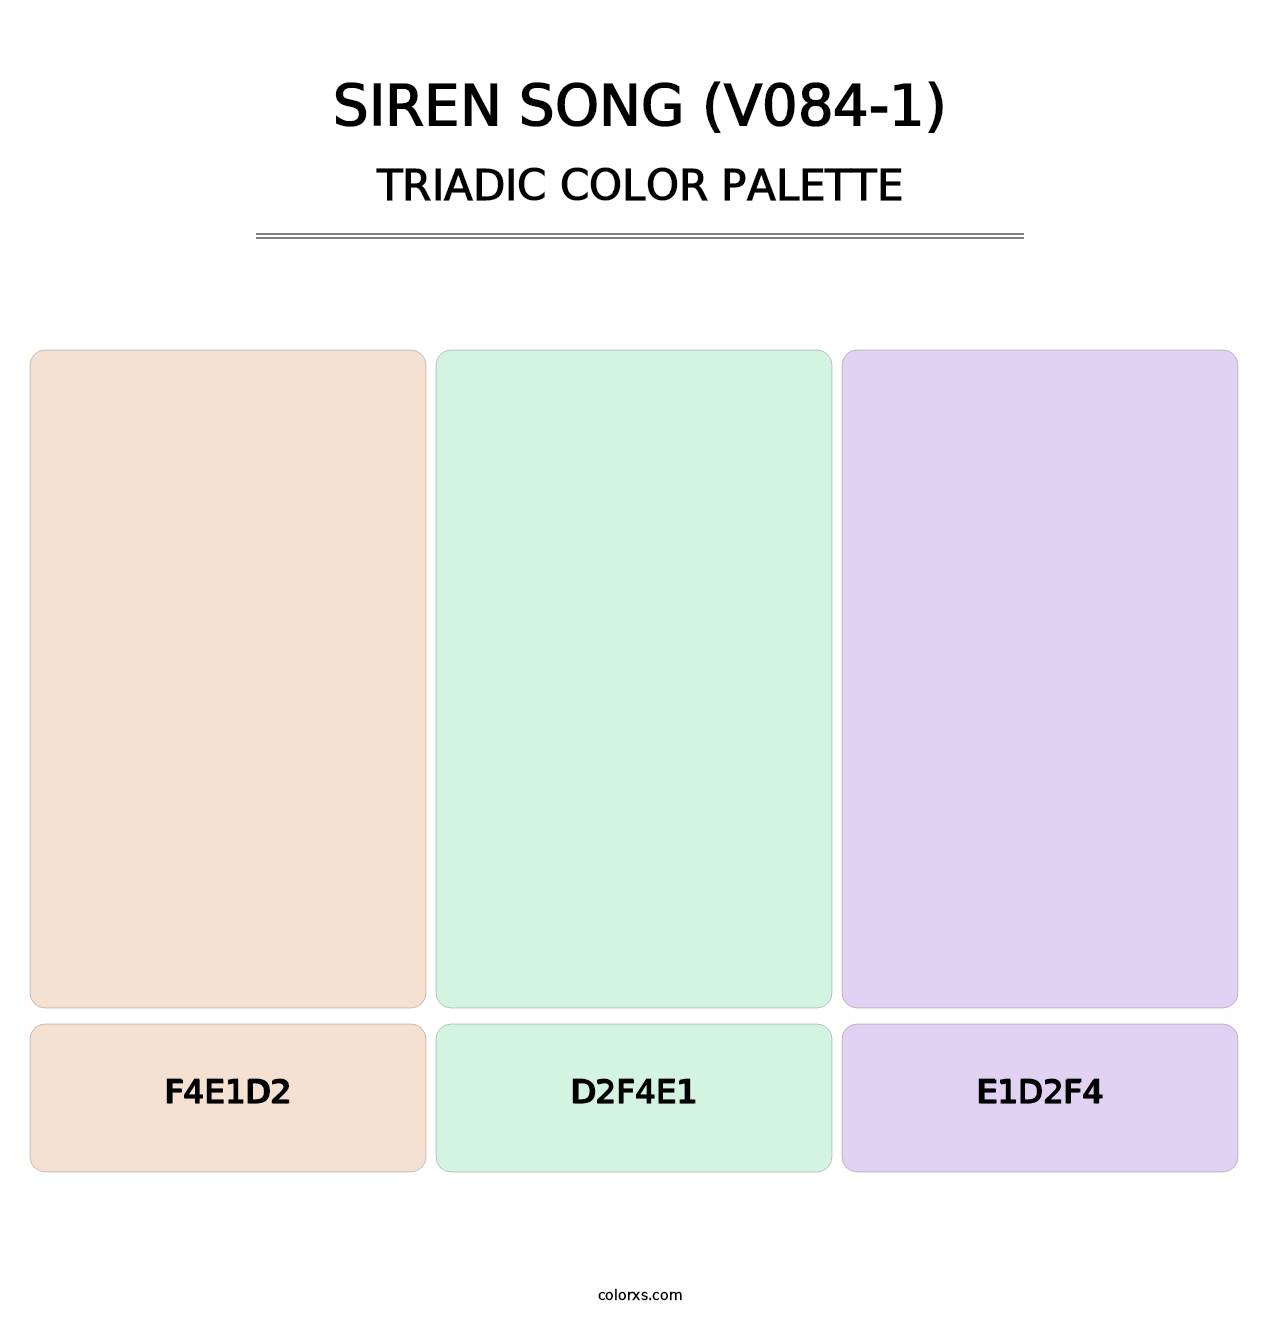 Siren Song (V084-1) - Triadic Color Palette